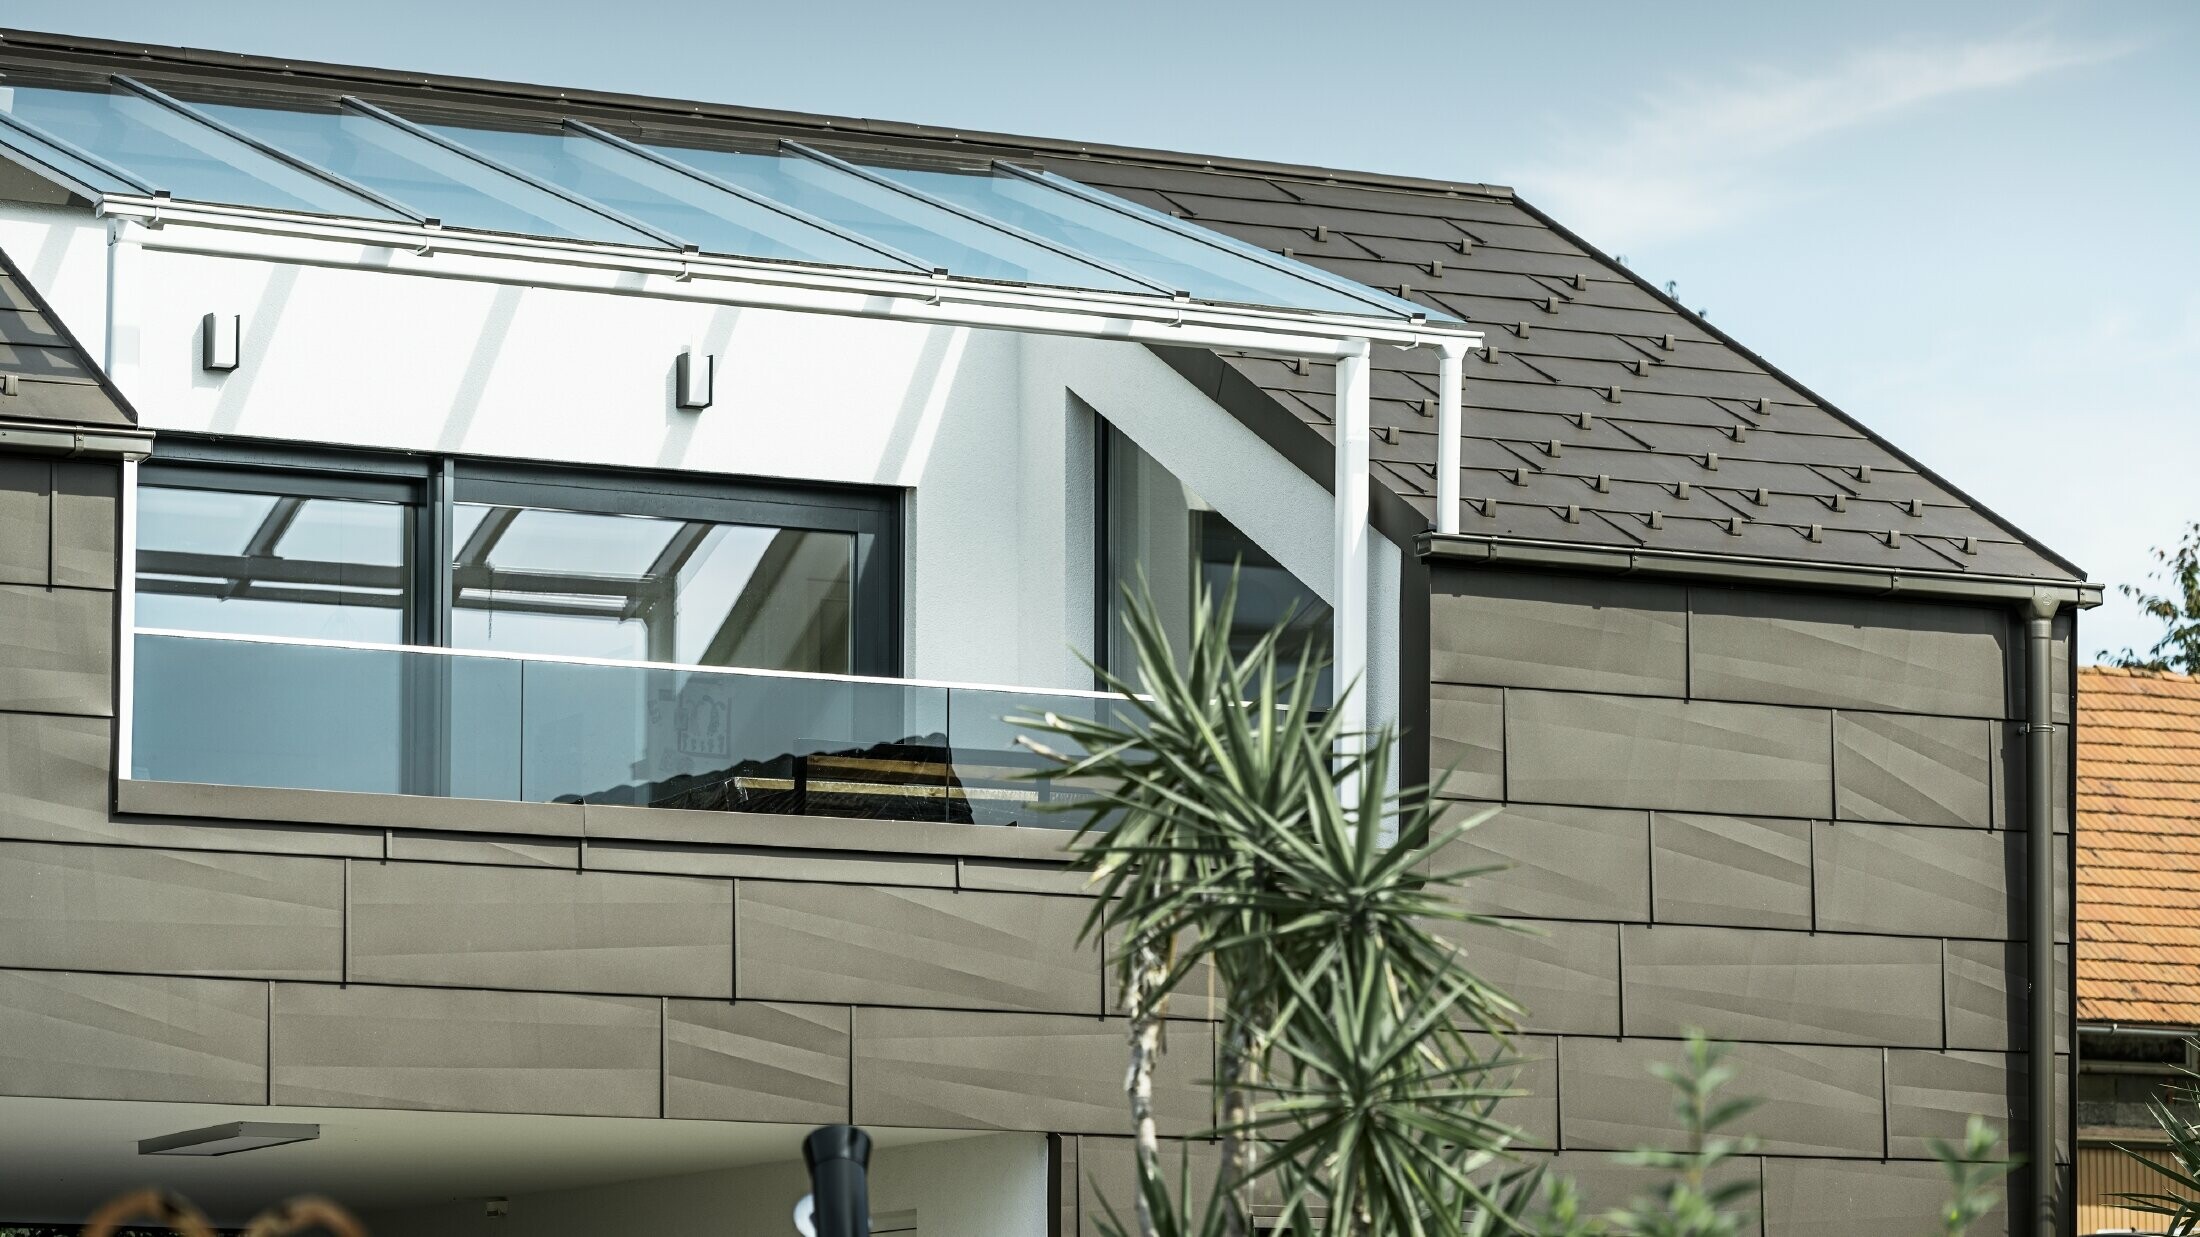 Bővítés PREFA komplett rendszerrel burkolt tetőterasszal, FX.12 PREFA tető- és homlokzatpanellel a tetőn és a homlokzaton. Ezenkívül a PREFA négyszögszelvényű ereszcsatorna PREFA lefolyócsővel és barna színű, gazdag tartozékokkal a tető-vízelvezetéshez.